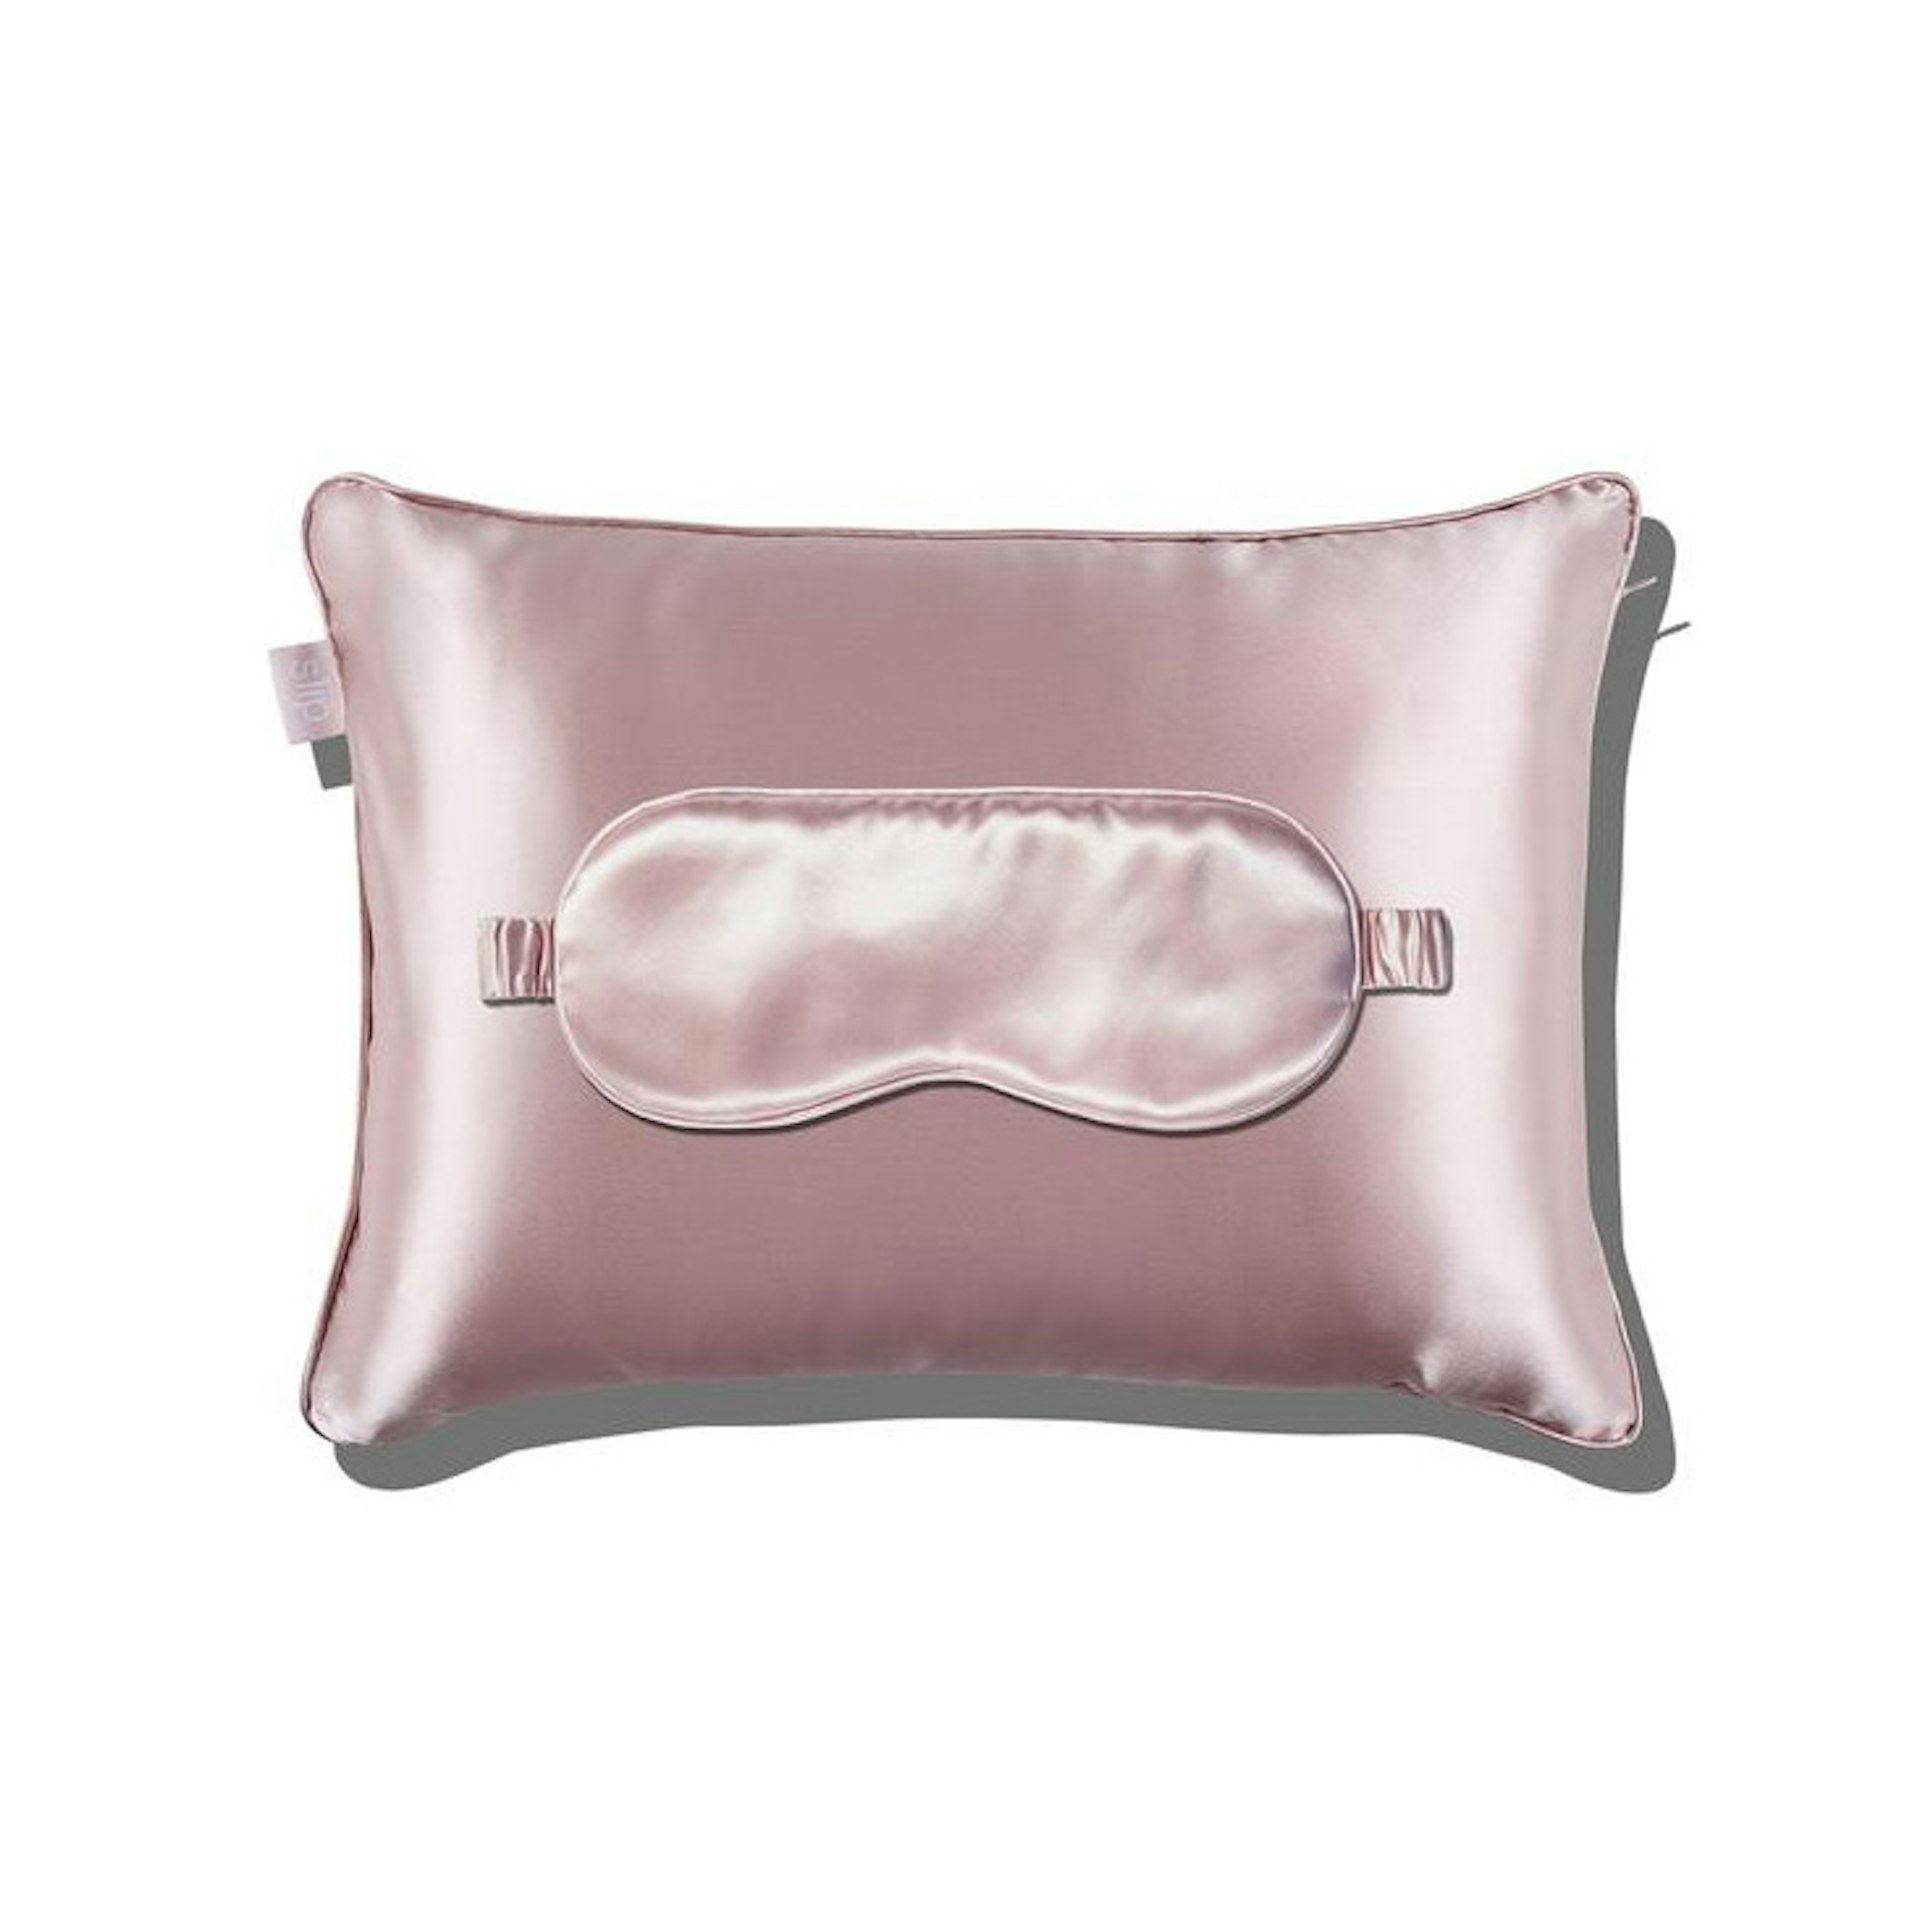 Slip's pink-silk travel set, an eye mask on top of a pillow